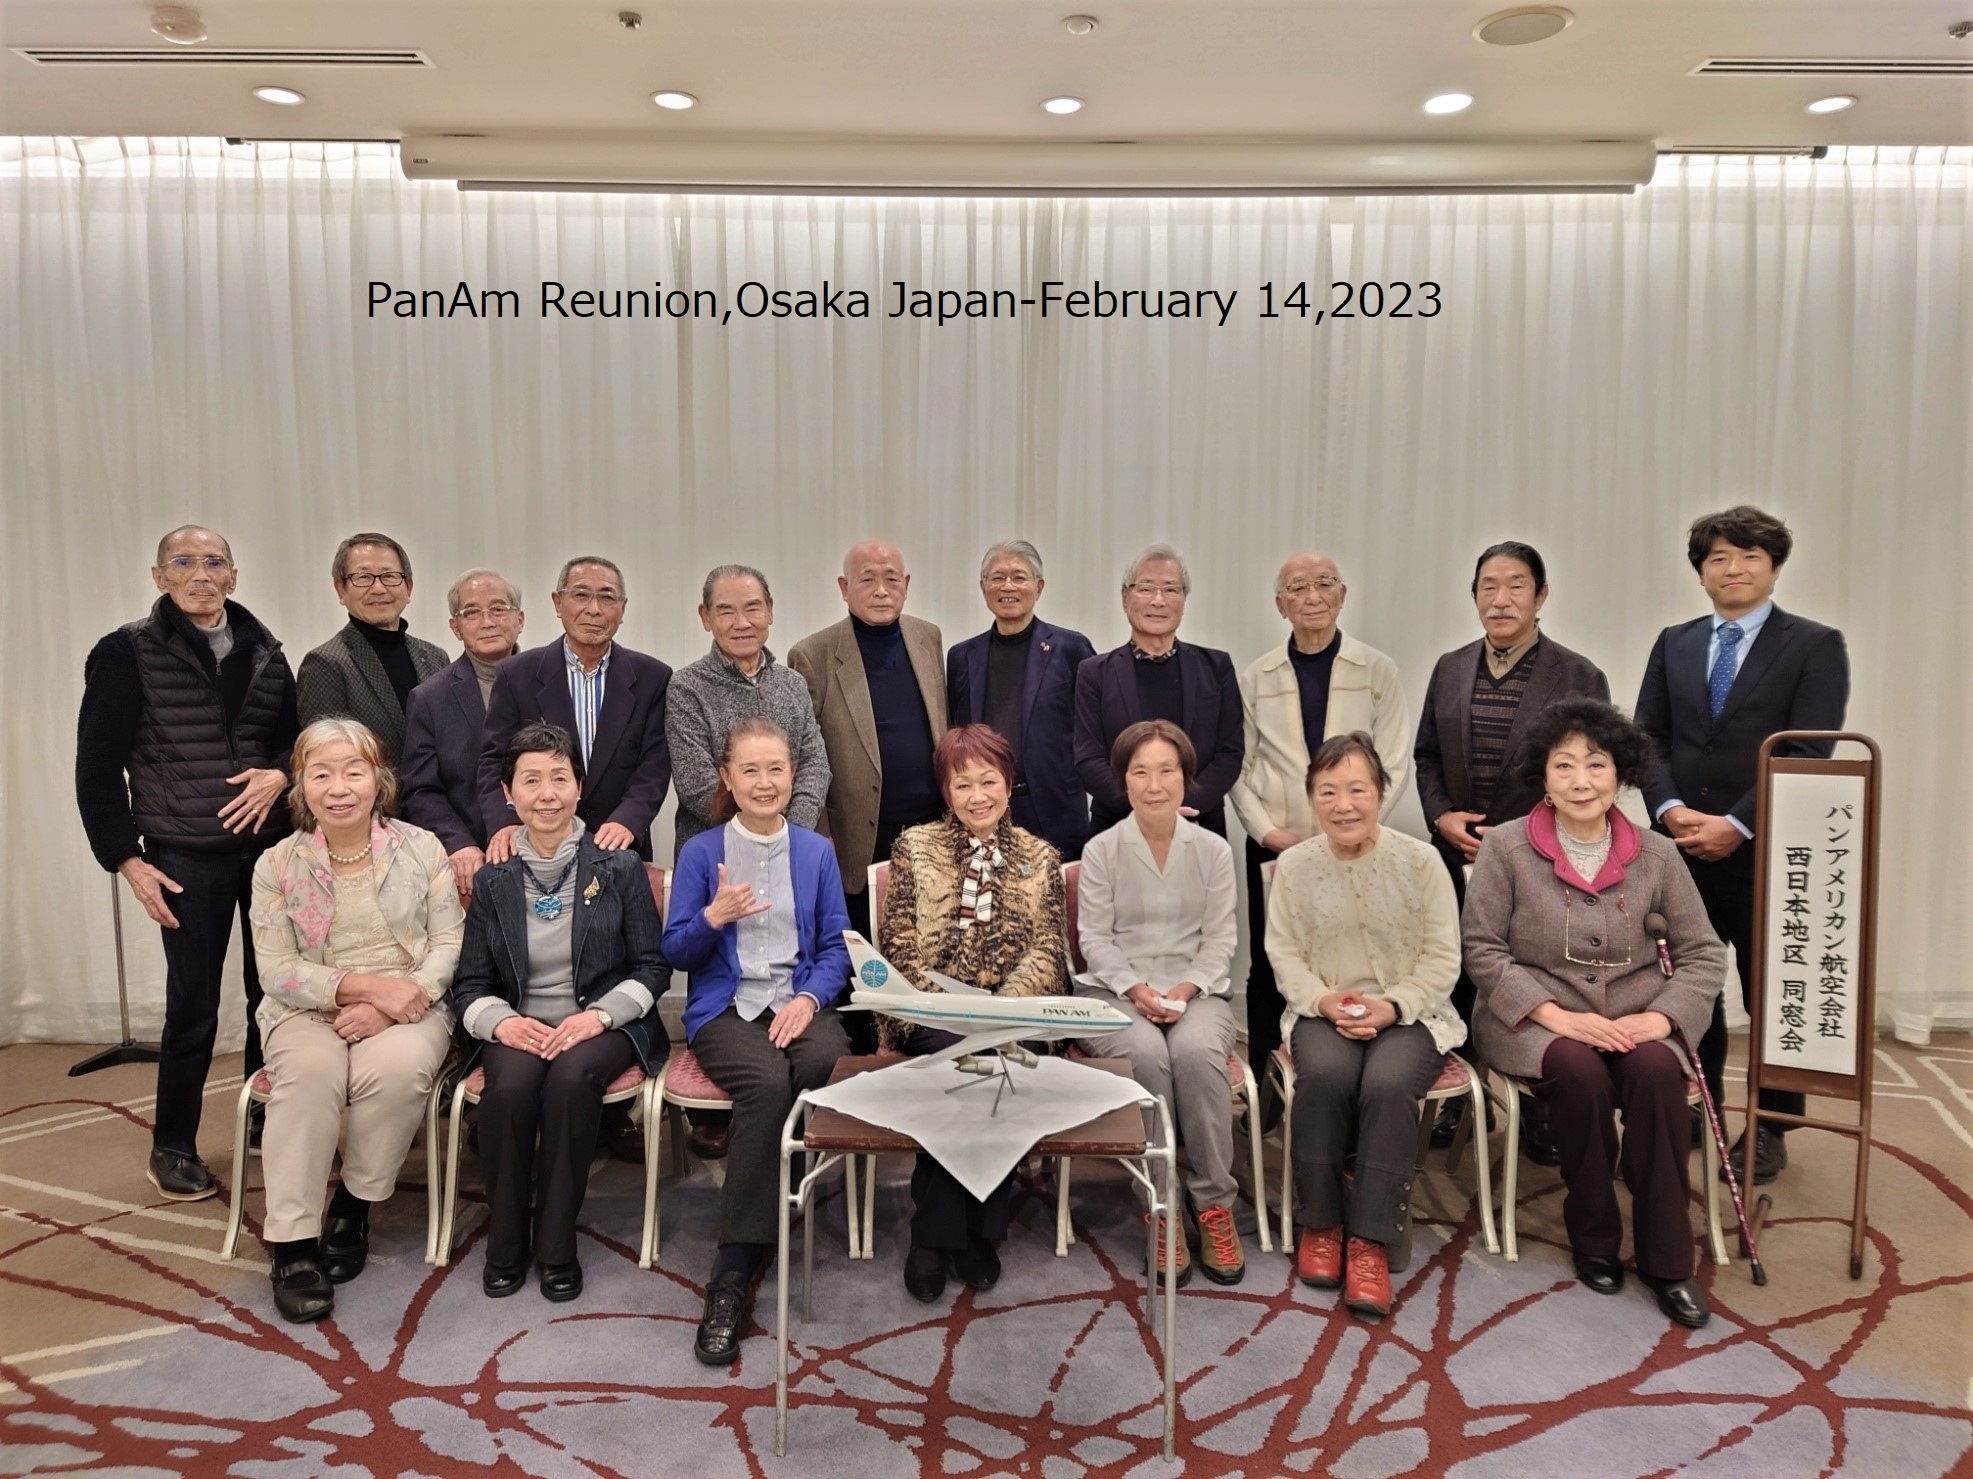 February 14, 2023 Reunion of Pan Am Alumni, Osaka, Japan